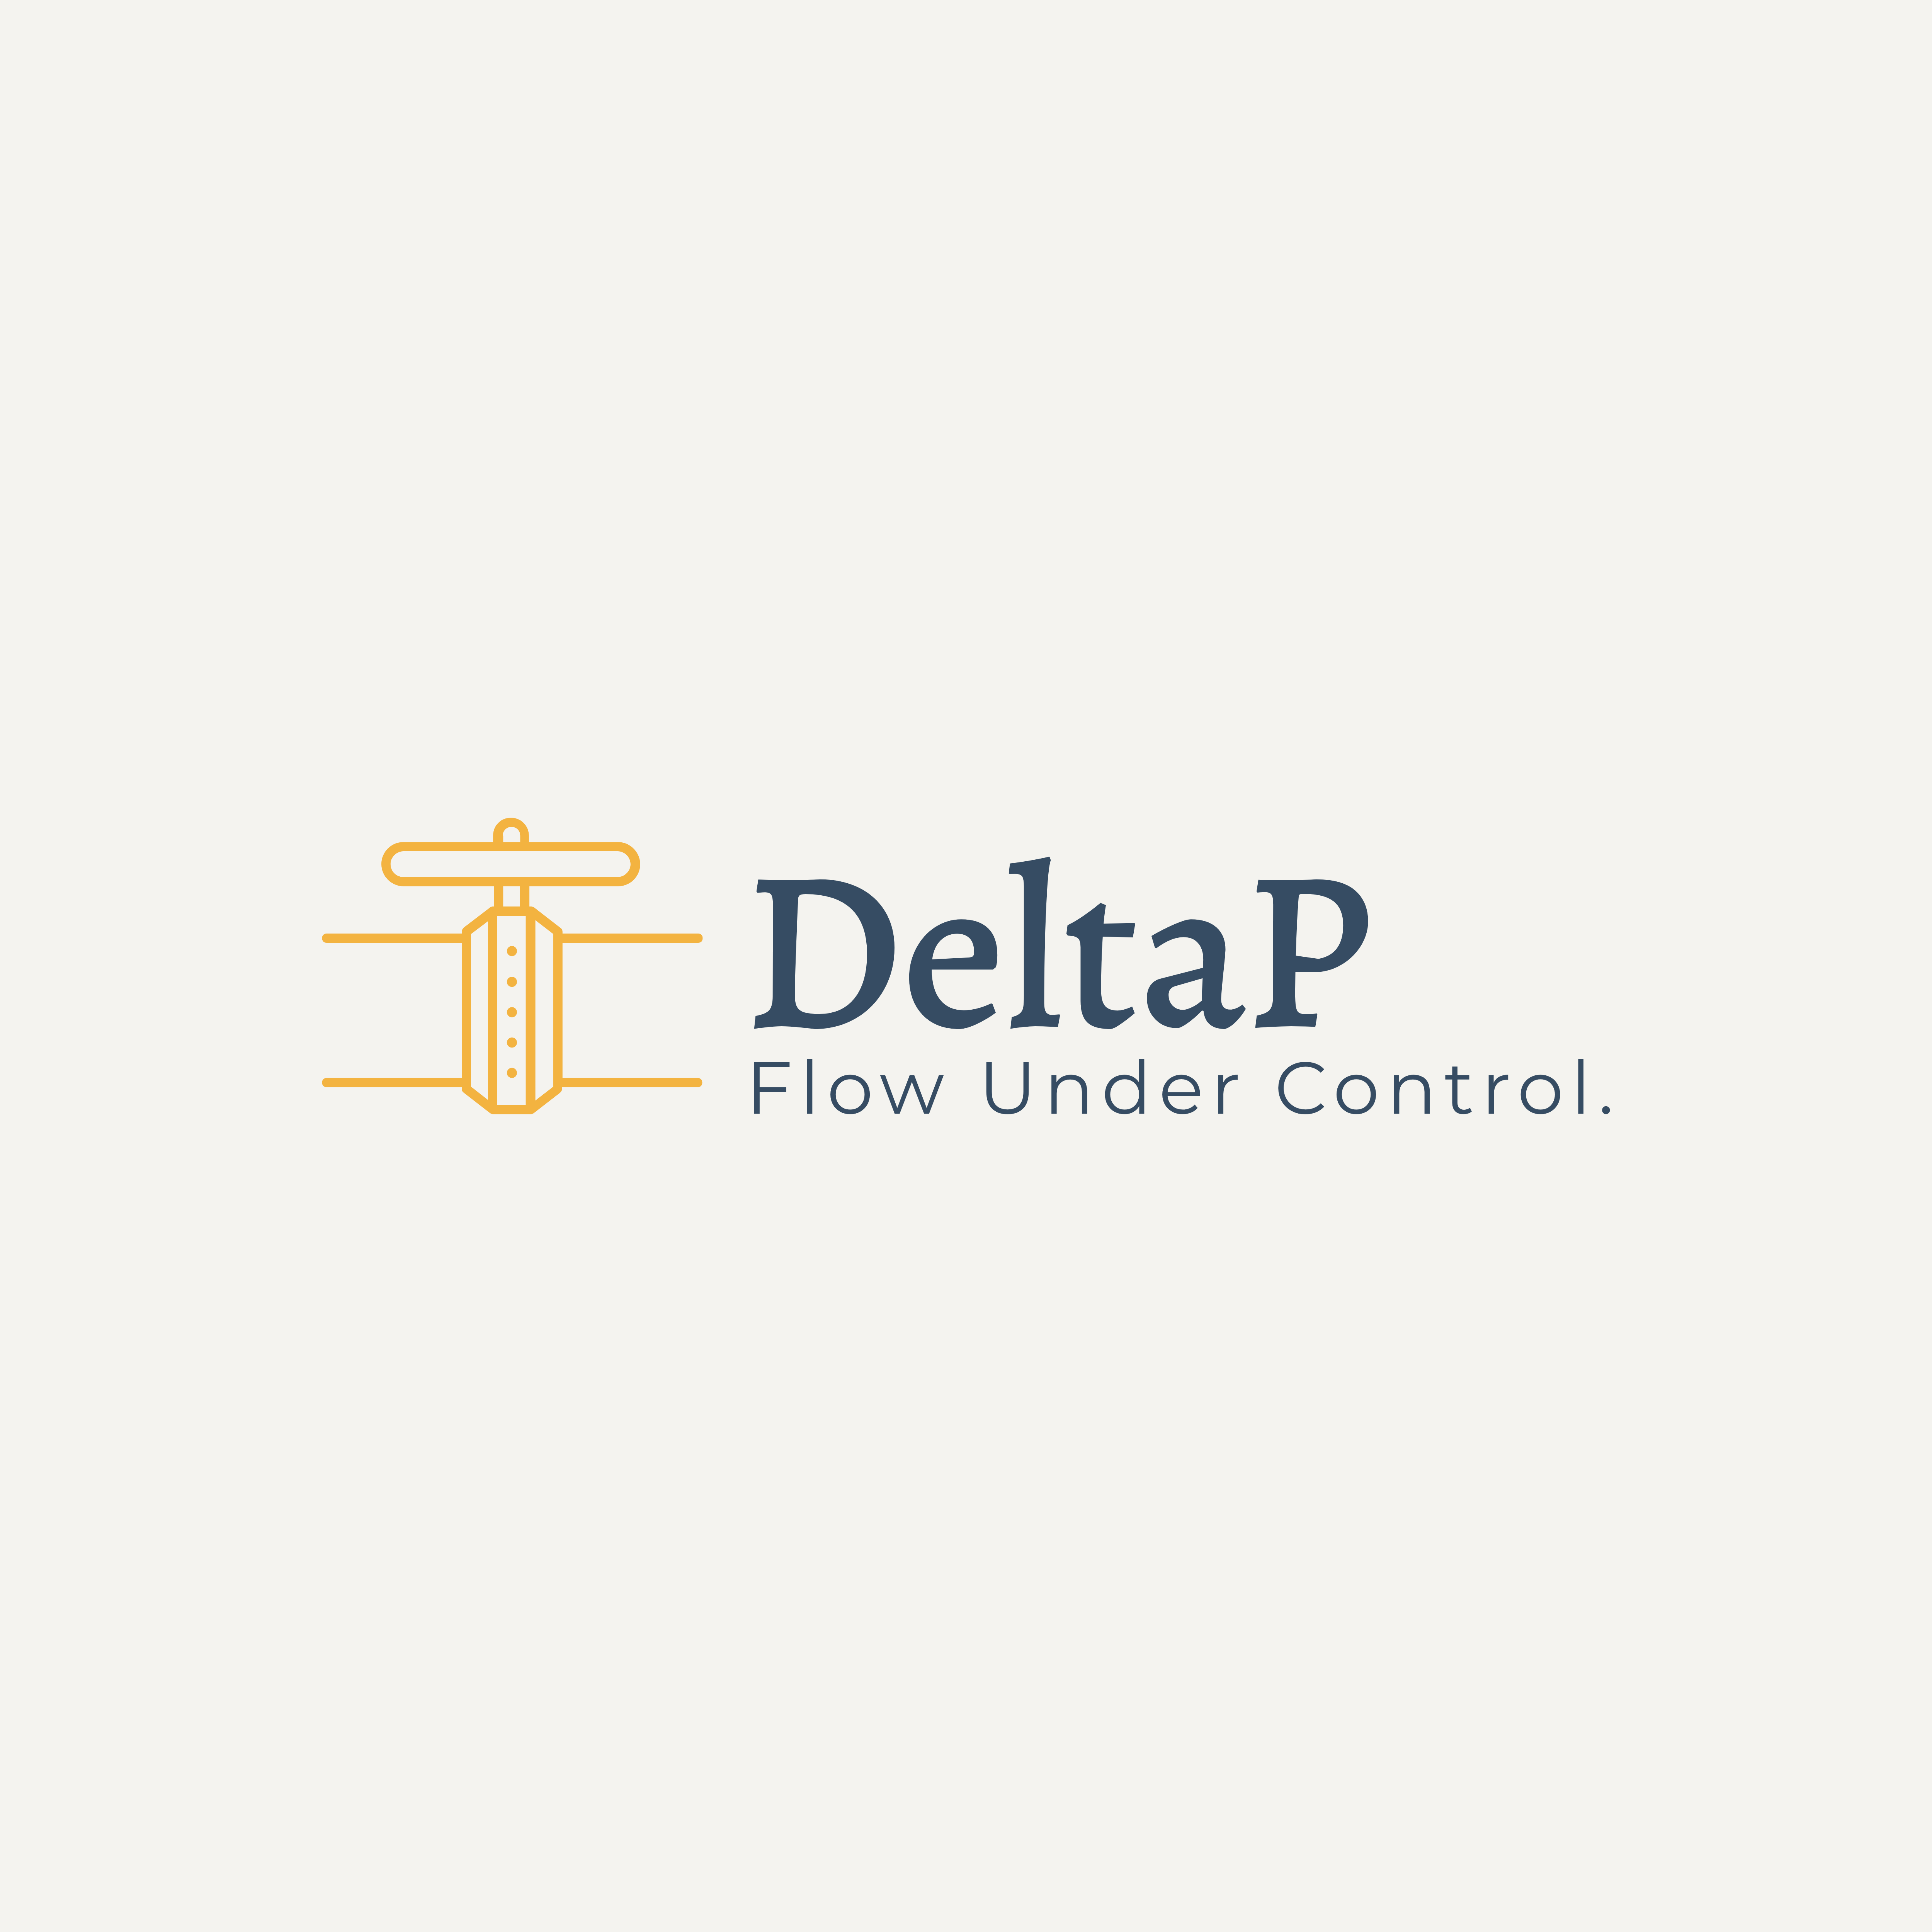 DeltaP Flow